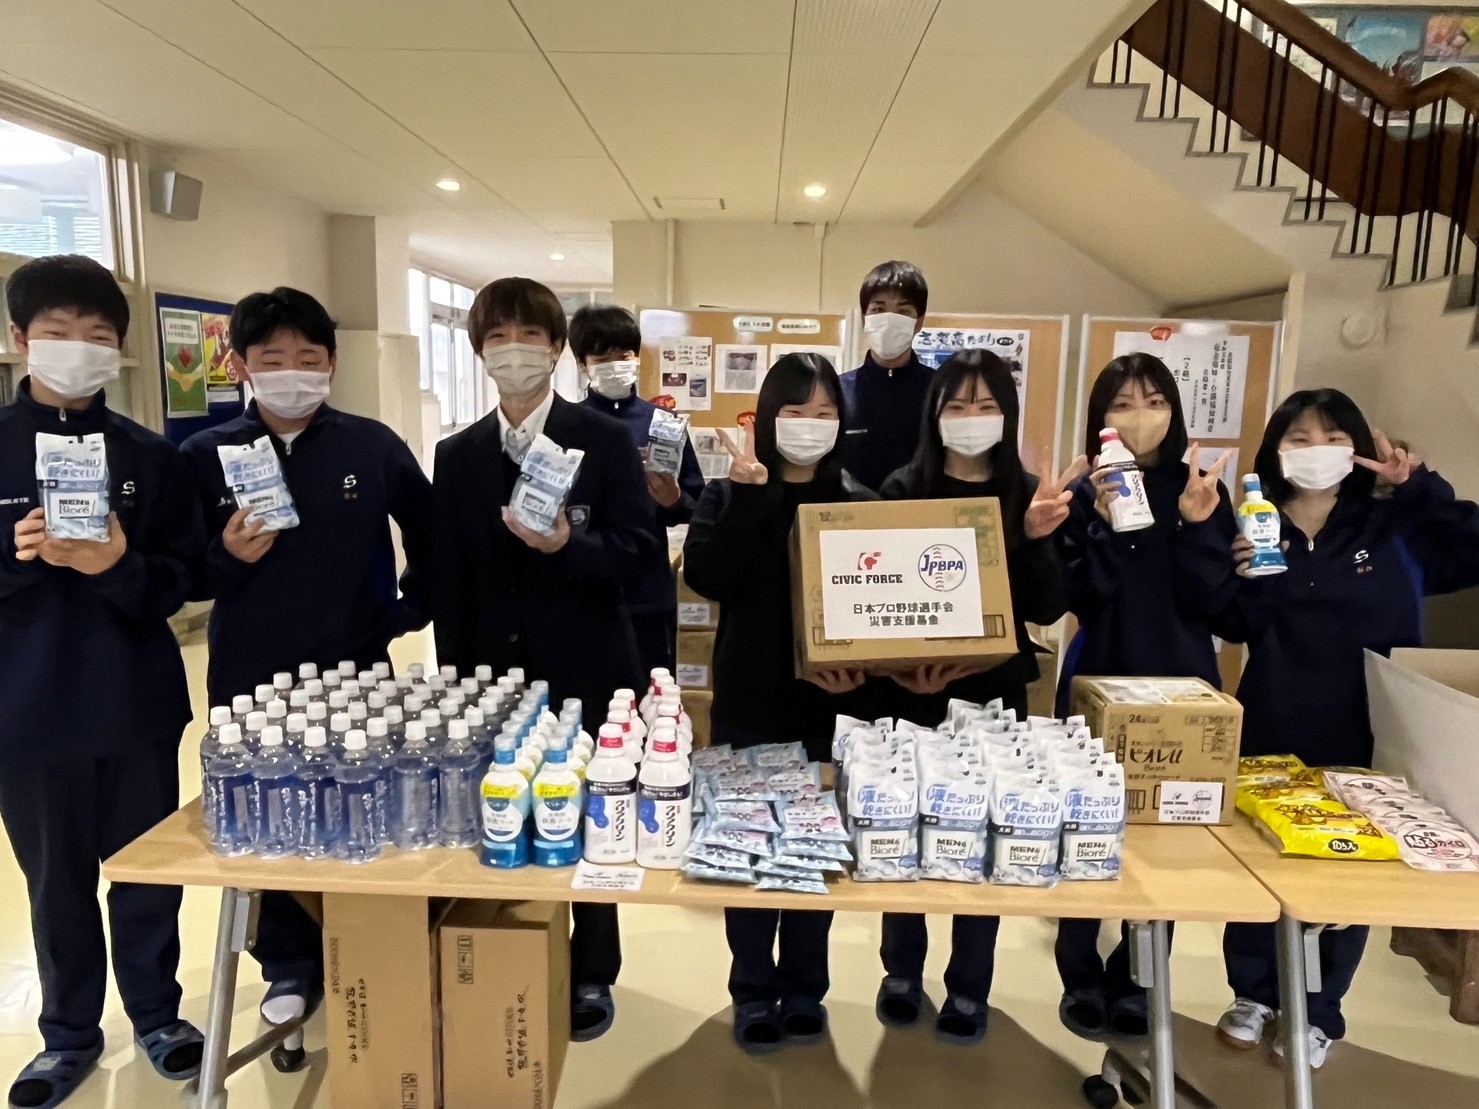 石川県高校野球連盟と連携して、被災地へ物資支援